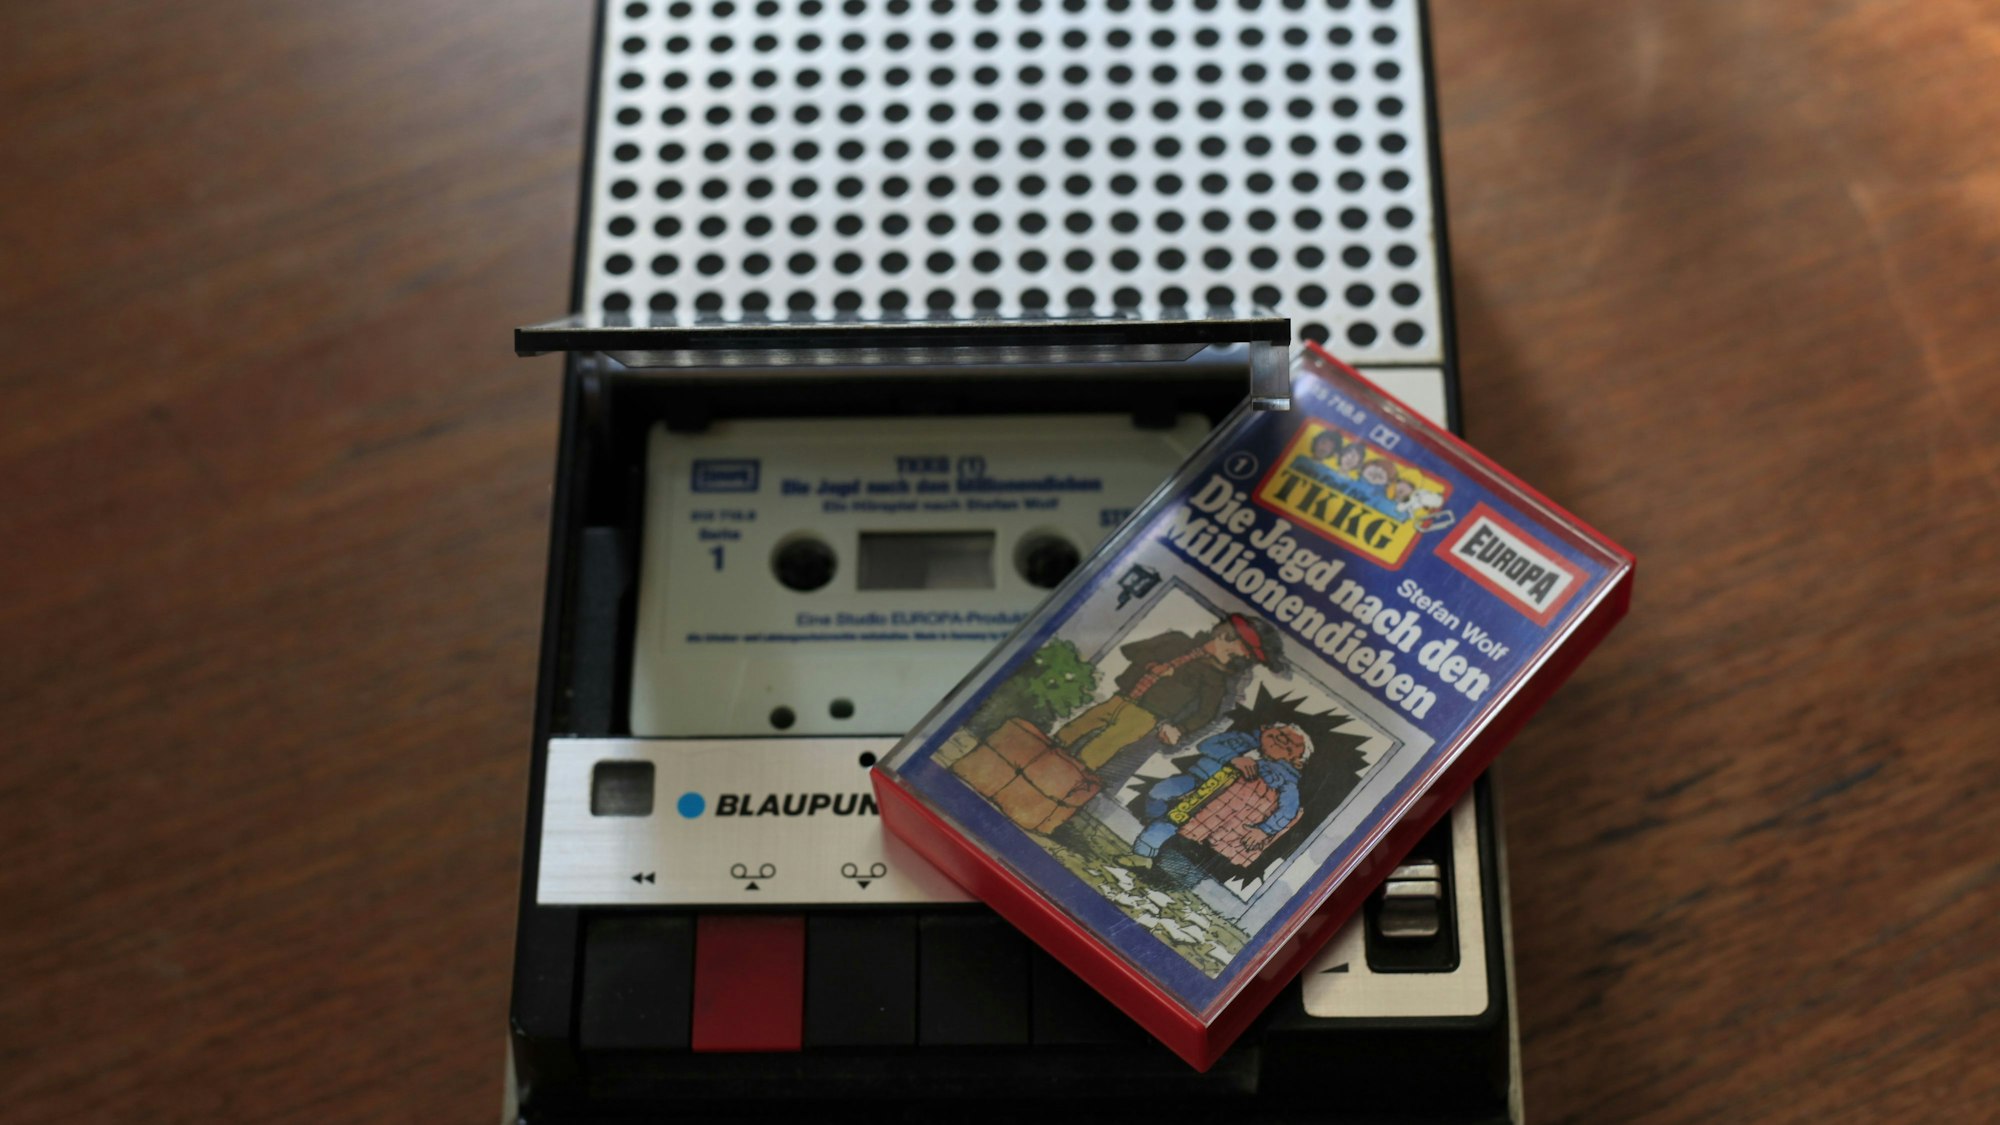 Eine Hörspielkassette aus der TKKG-Reihe liegt auf einem alten Kassetten-Rekorder.